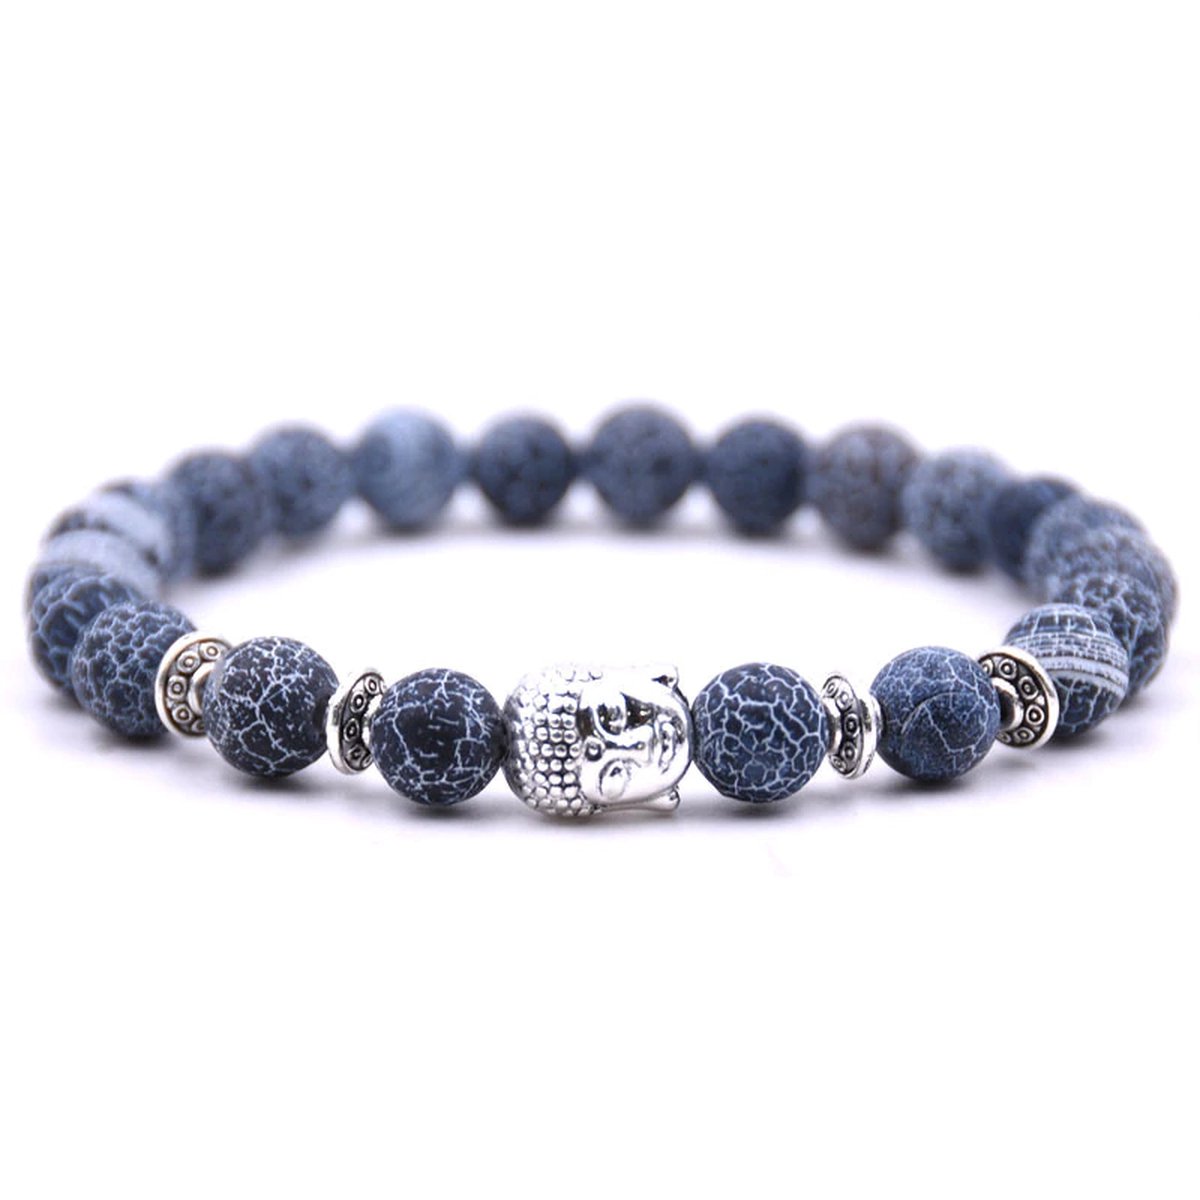 Armband met buddha bedel - Armband natuursteen - Kralen band - Dames / Heren / Unisex / Cadeau - Cadeau voor man & vrouw - Zilveren Buddha - Elastisch - Zwart / blauw